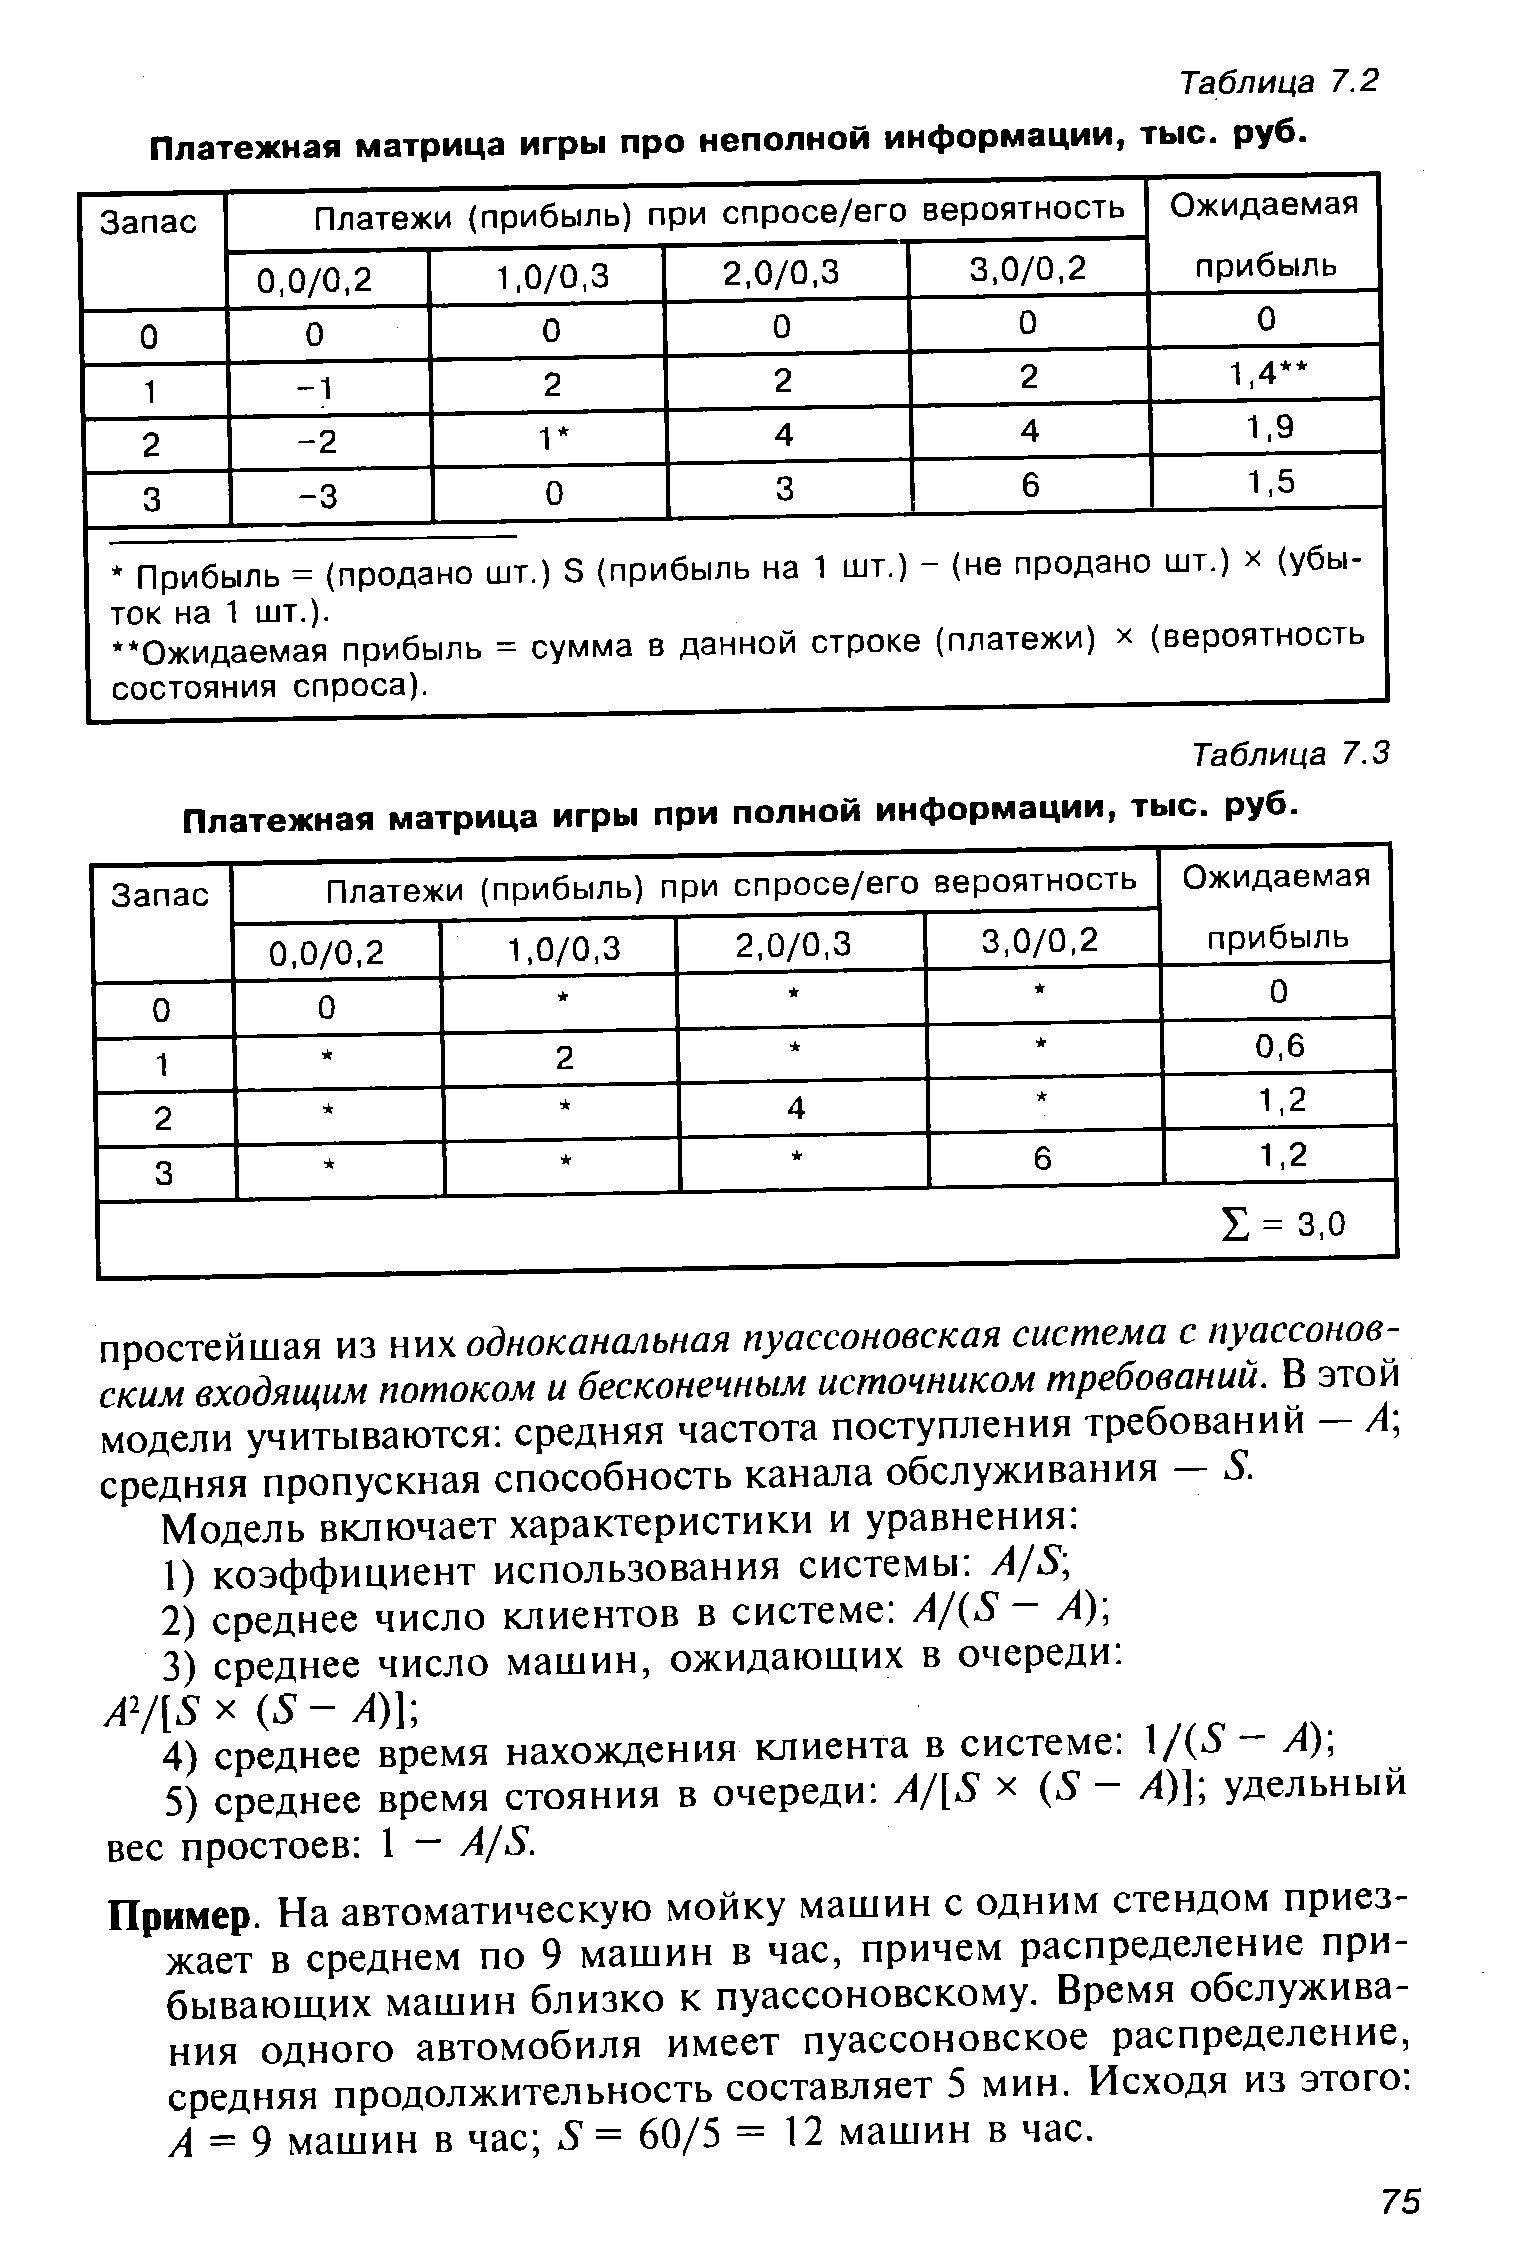 Таблица 7.3 Платежная матрица игры при полной информации, тыс. руб.
